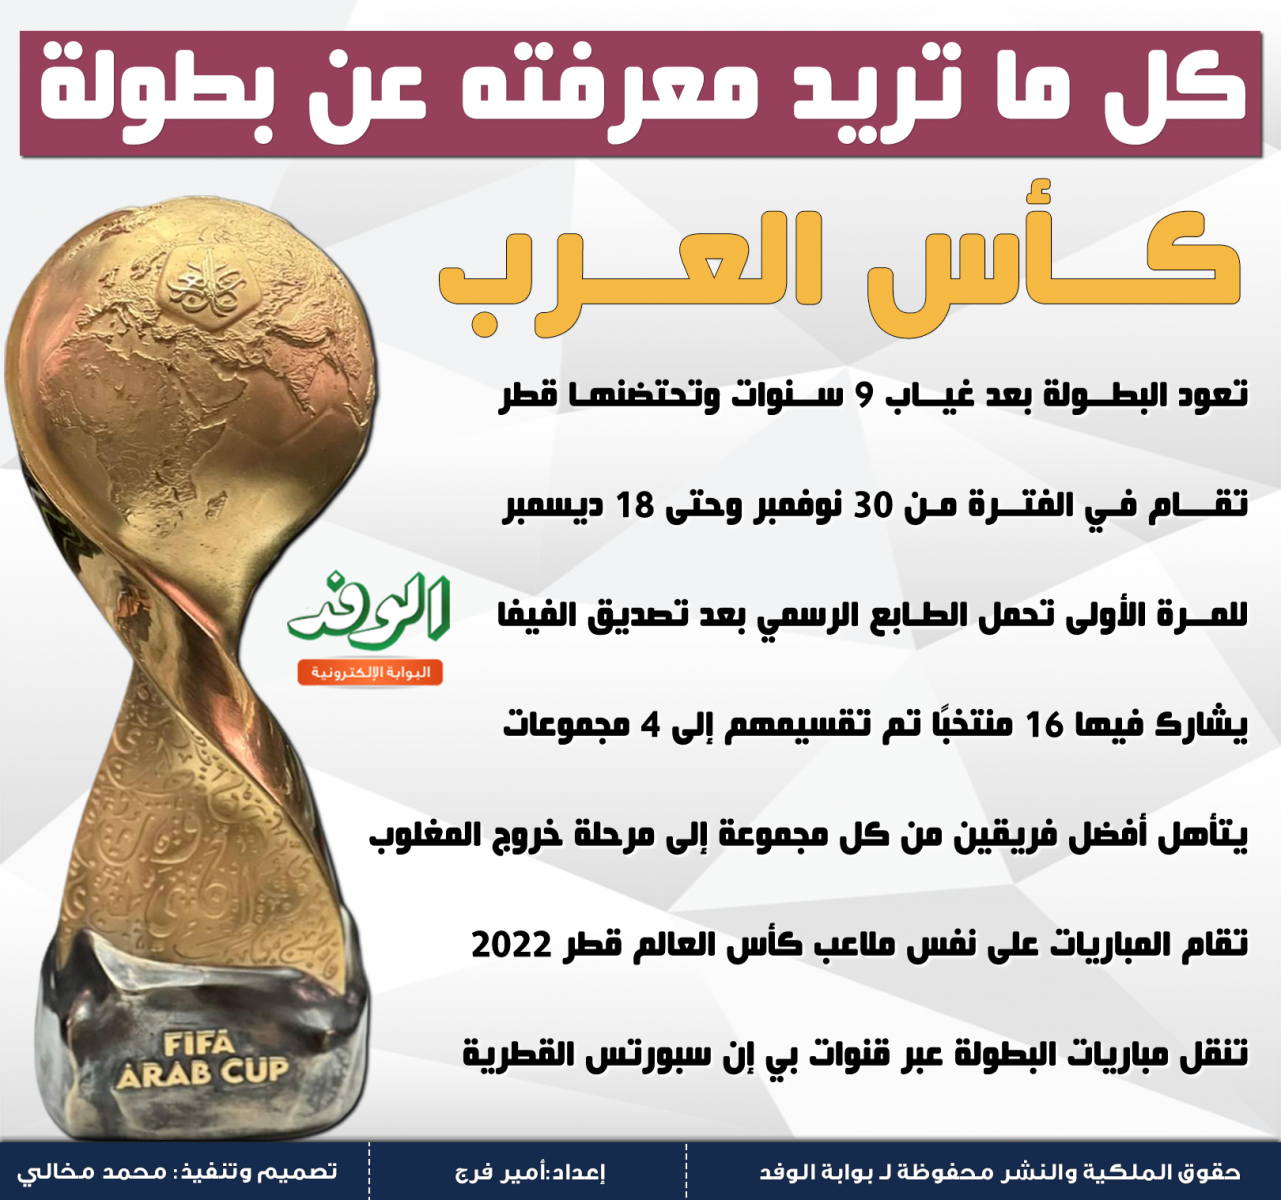  إنفوجراف.. كل ما تريد معرفته عن بطولة كأس العرب 